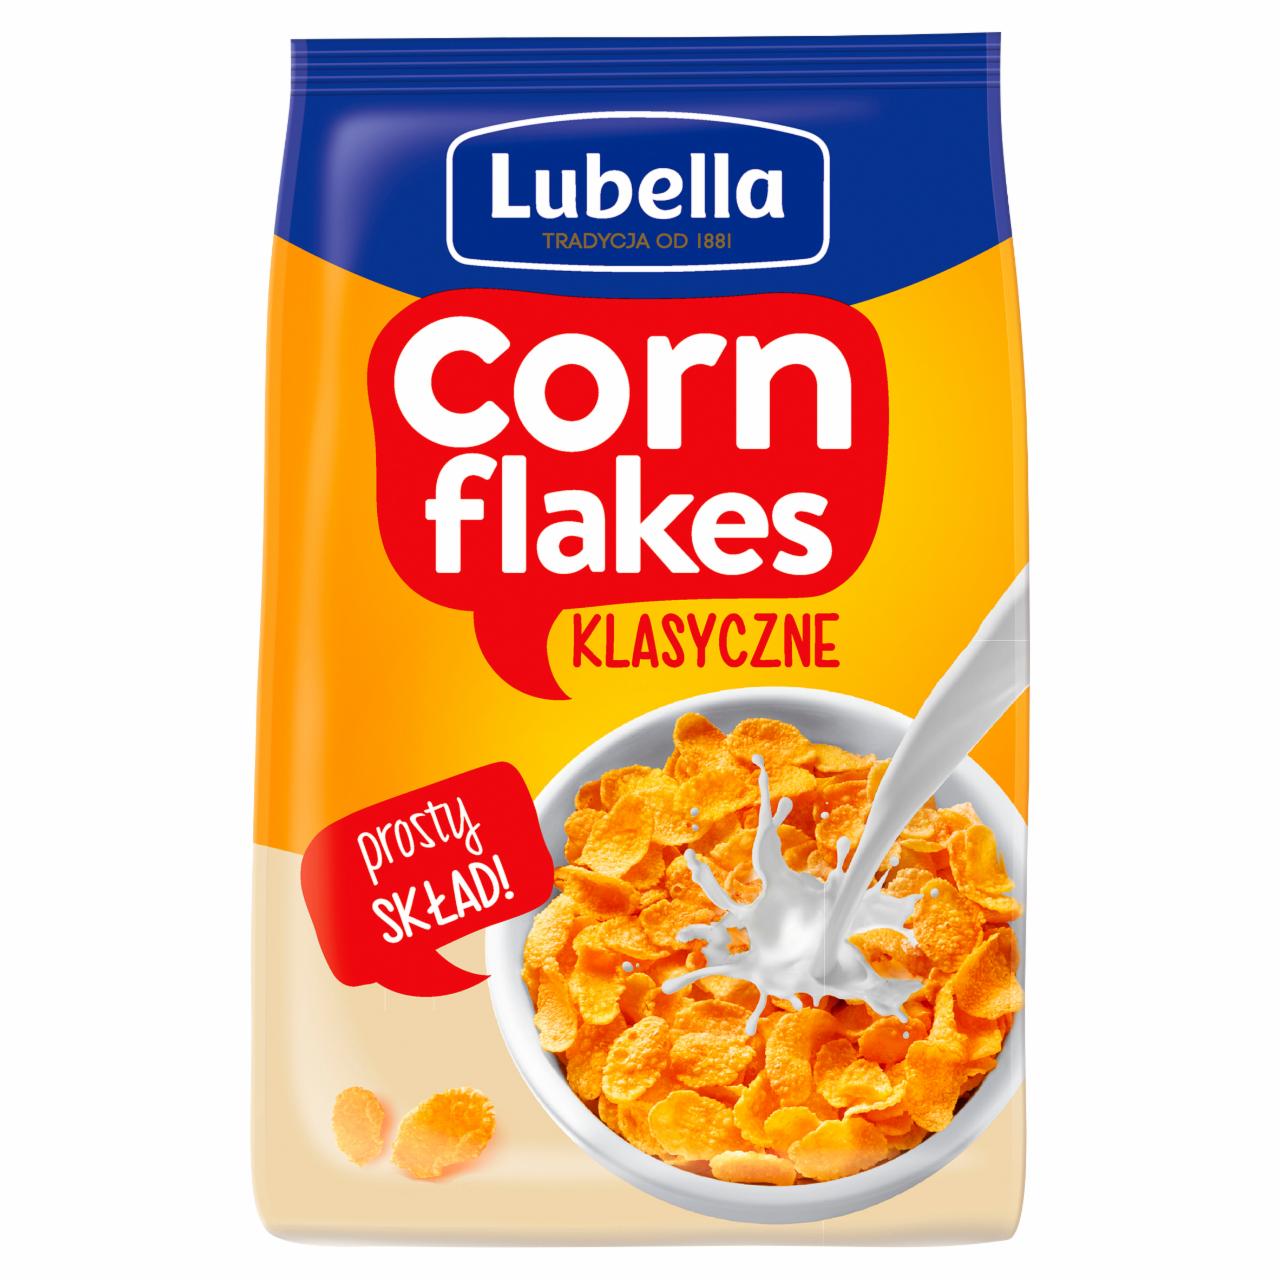 Zdjęcia - Lubella Corn Flakes Płatki kukurydziane klasyczne 250 g